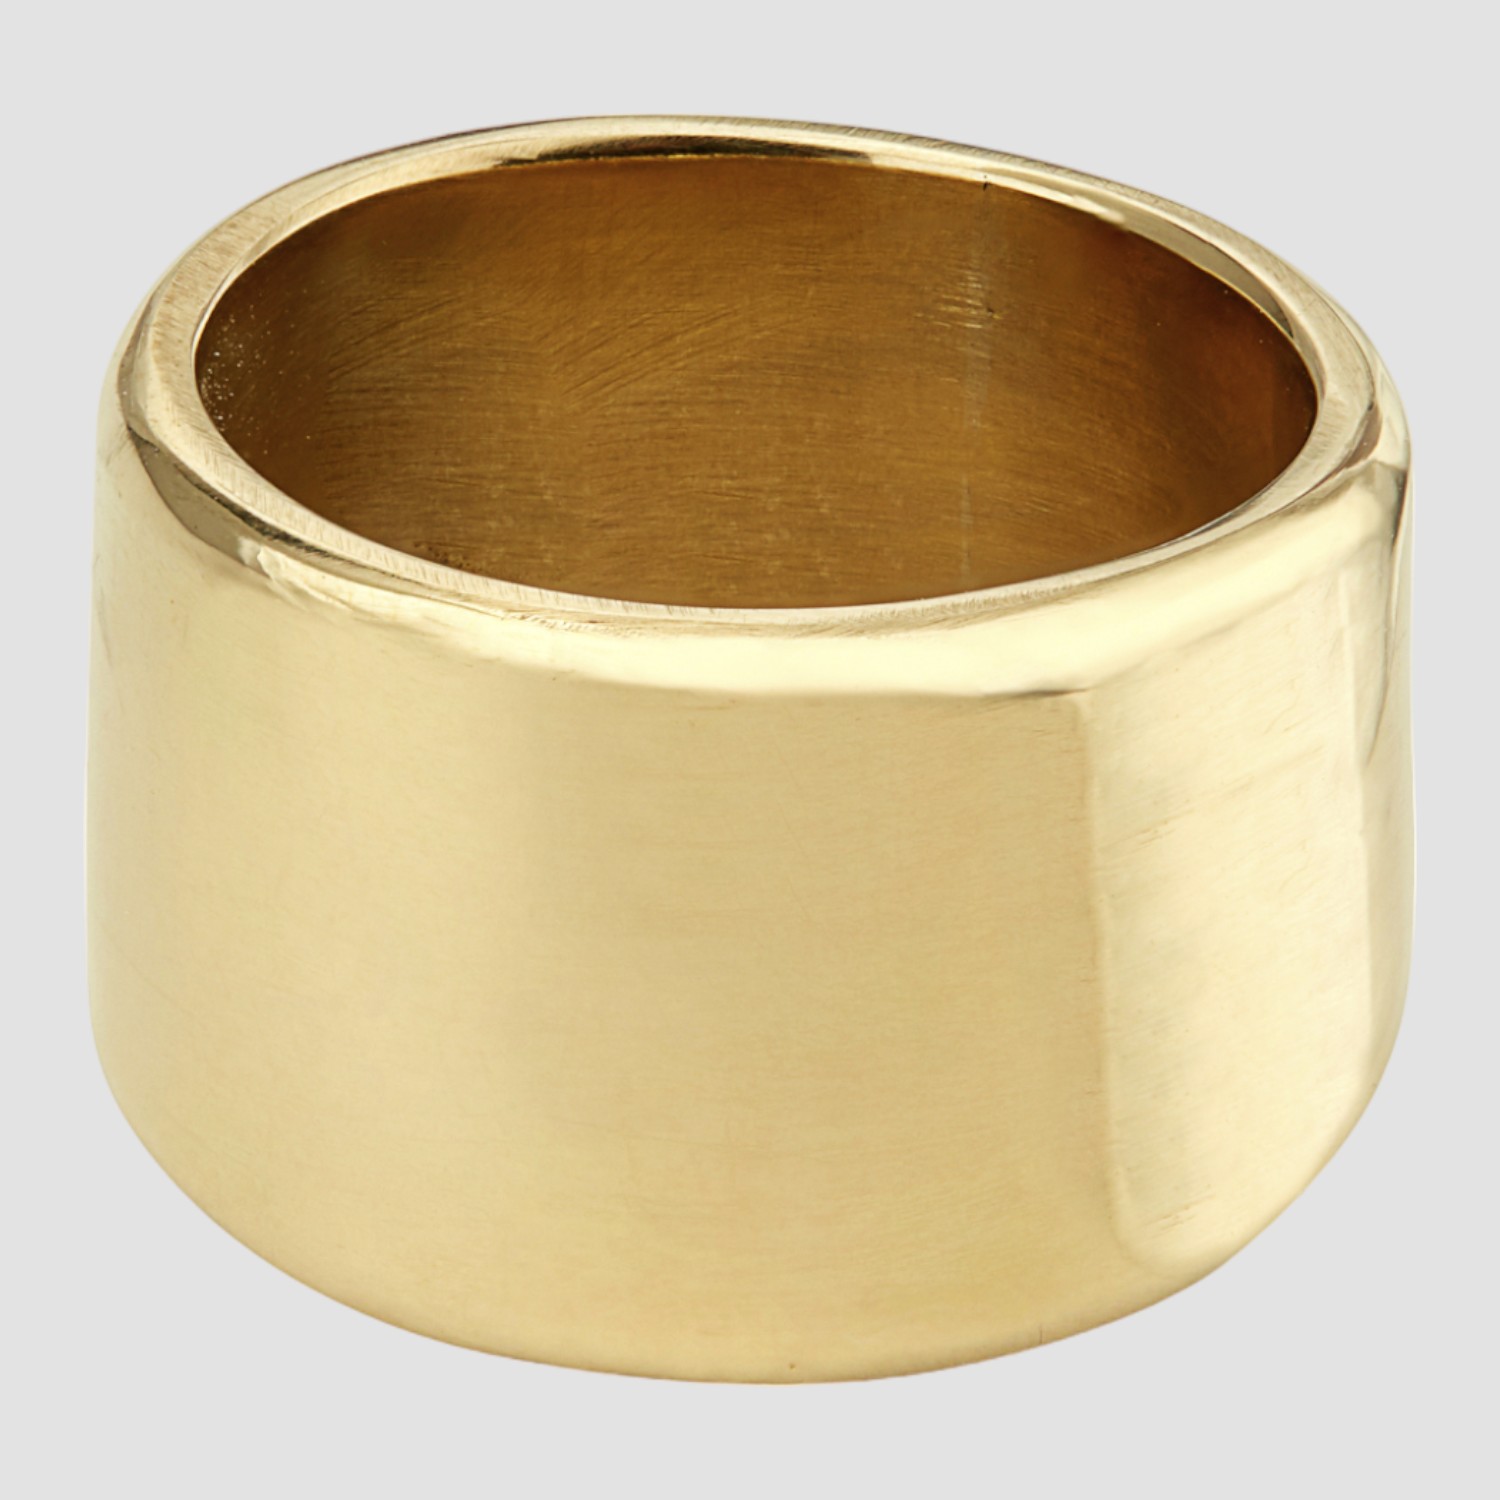 Soko Ripple Band Ring